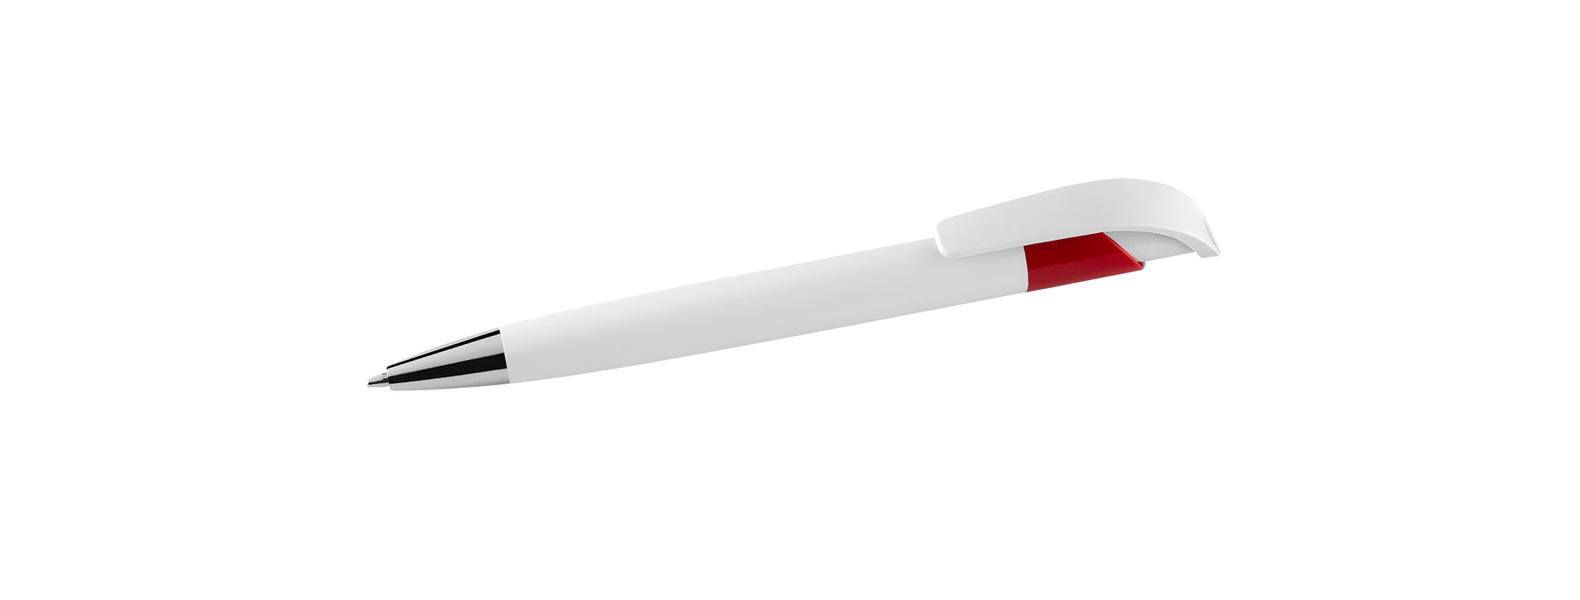 Caneta esferográfica em Plástico branca / vermelha. Conta com carga esferográfica azul acionada com um click na extremidade da caneta.